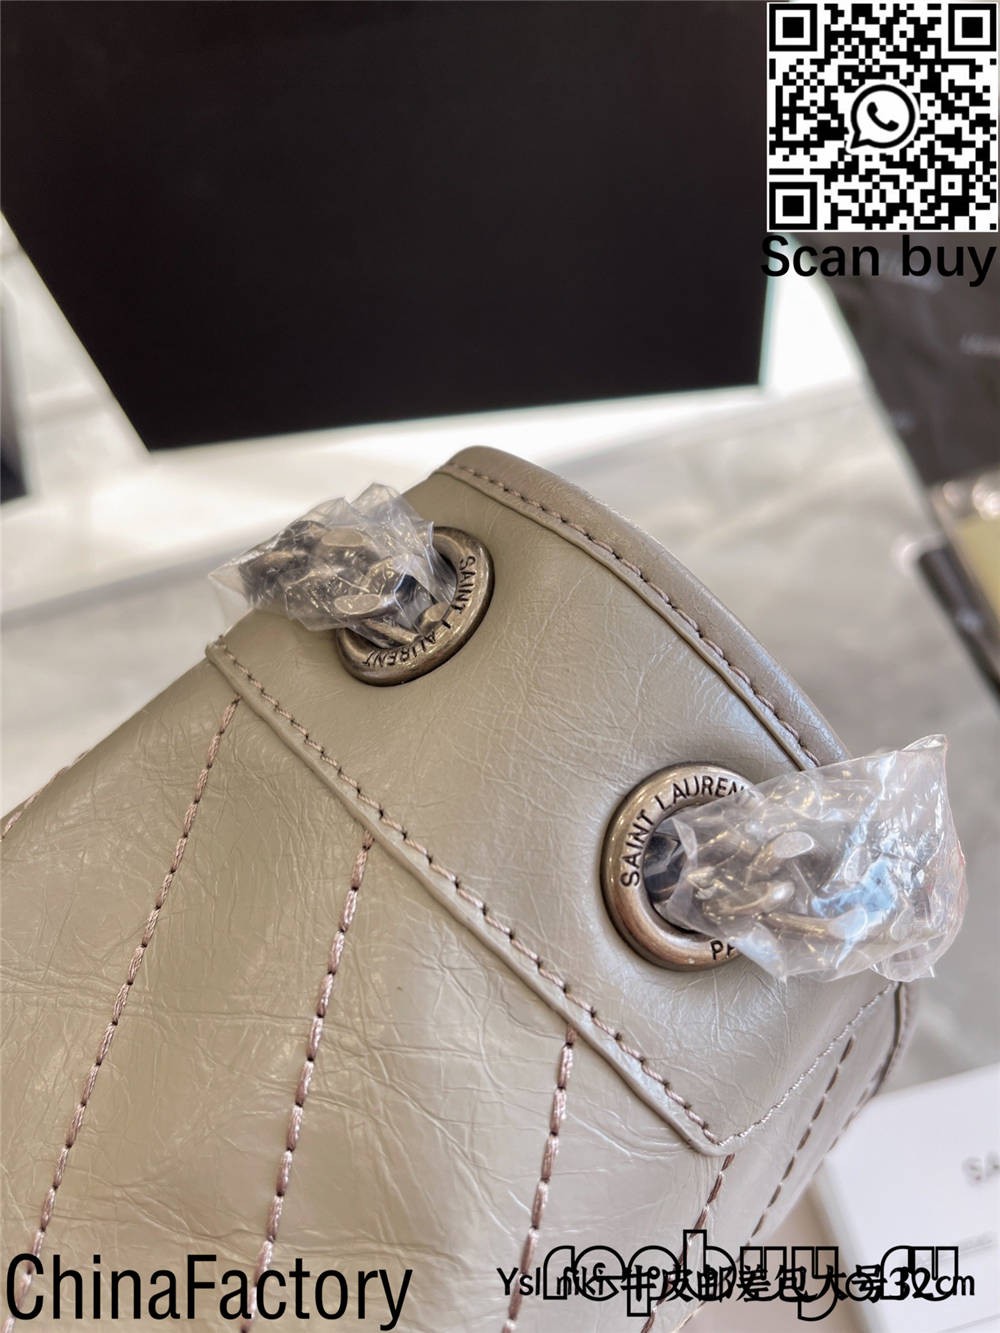 YSL’s top 12 best replica bags to buy (2022 updated)-Best Quality Fake designer Bag Review, Replica designer bag ru